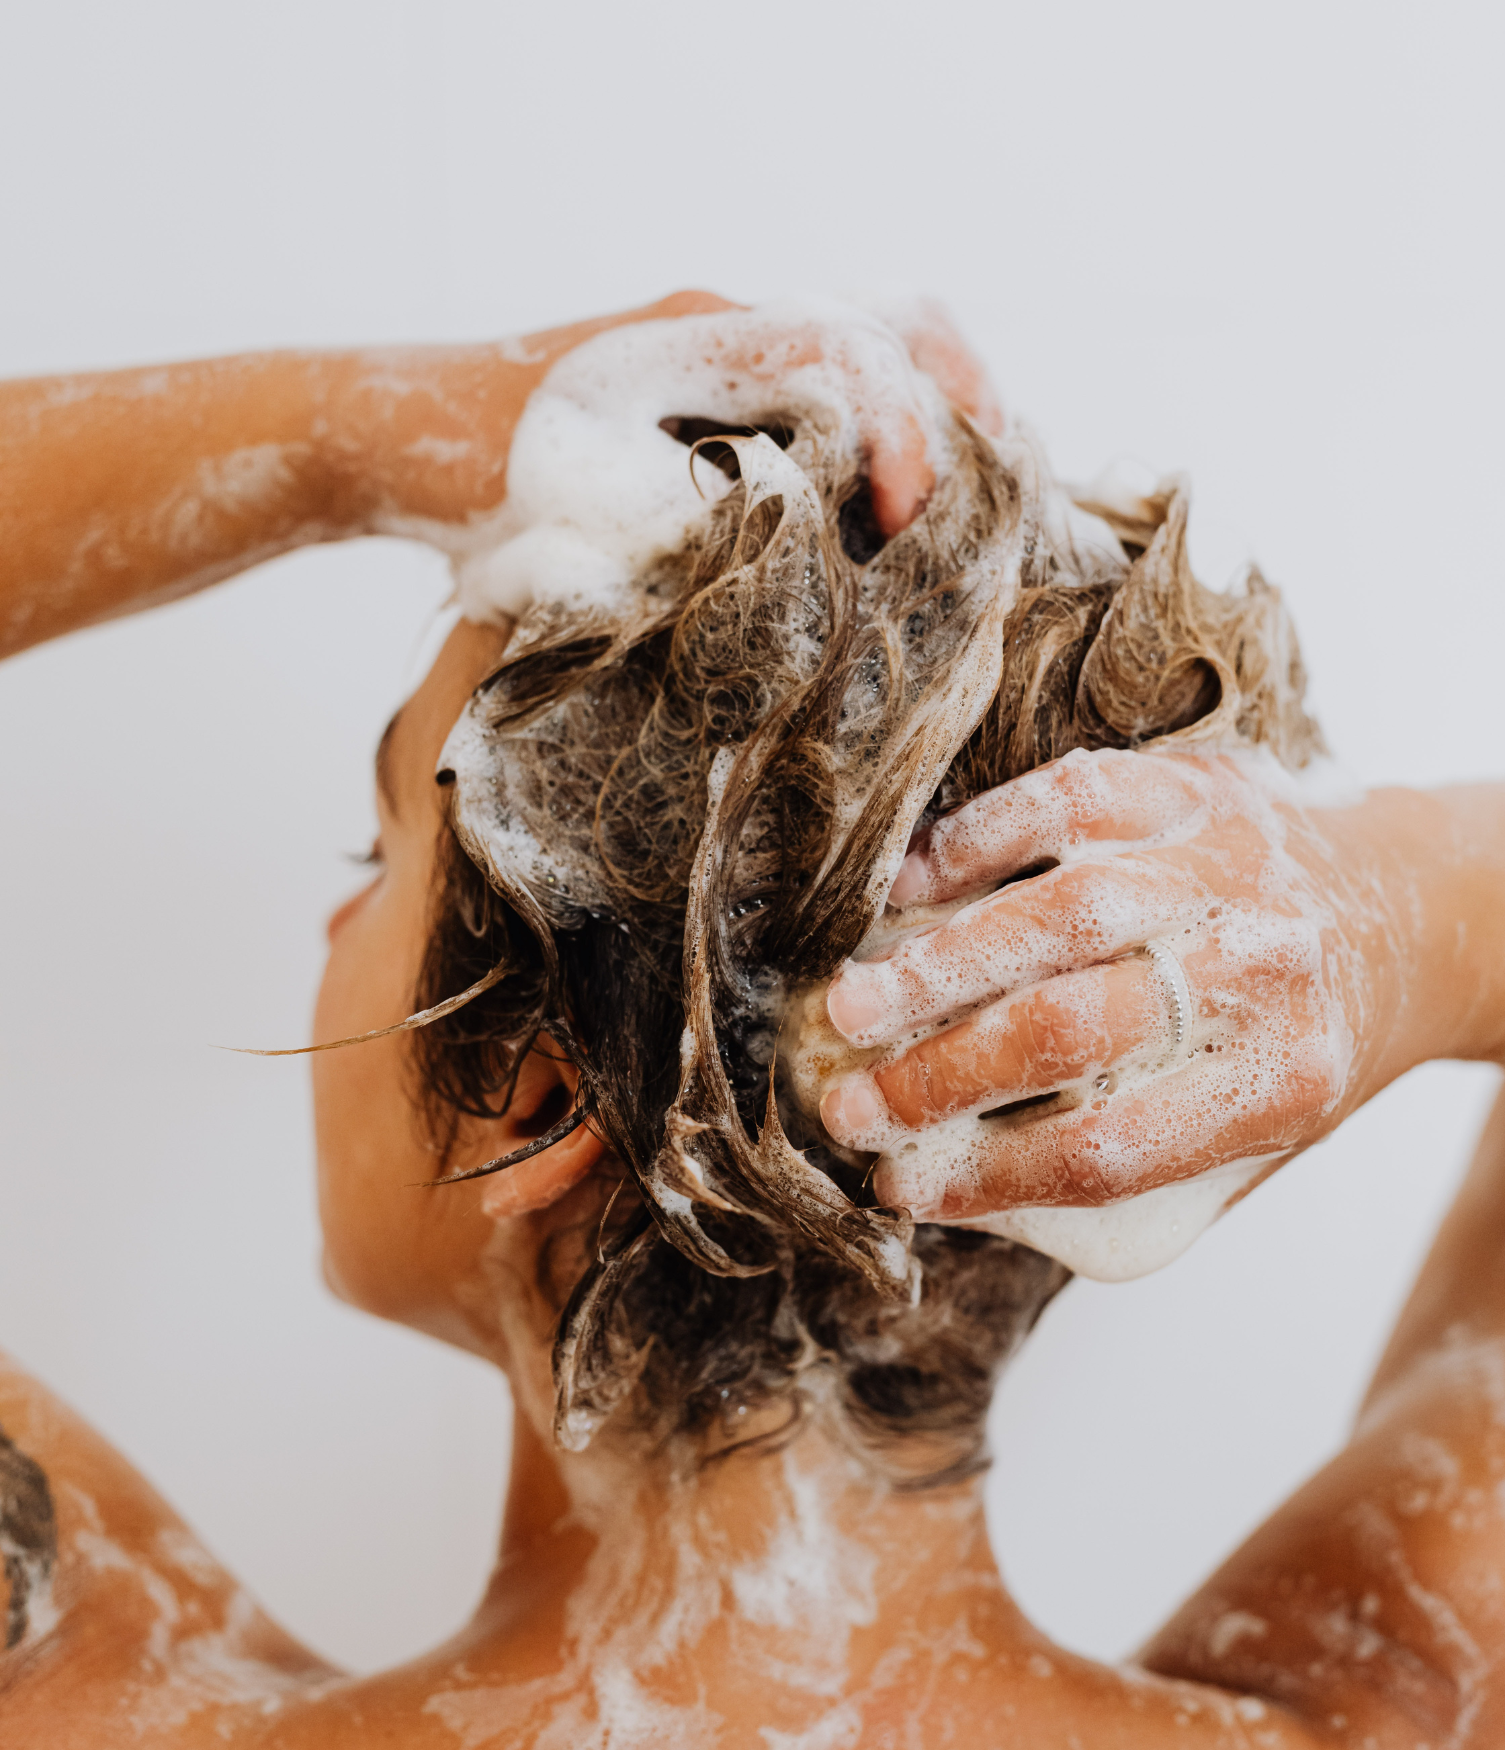 Beneficios del filtro de ducha  ¿Te gustaría tener tu piel y cabello más  sanos? Con nuestro filtro de ducha es posible 🚿 Conoce los beneficios de  nuestros filtros de ducha 💦